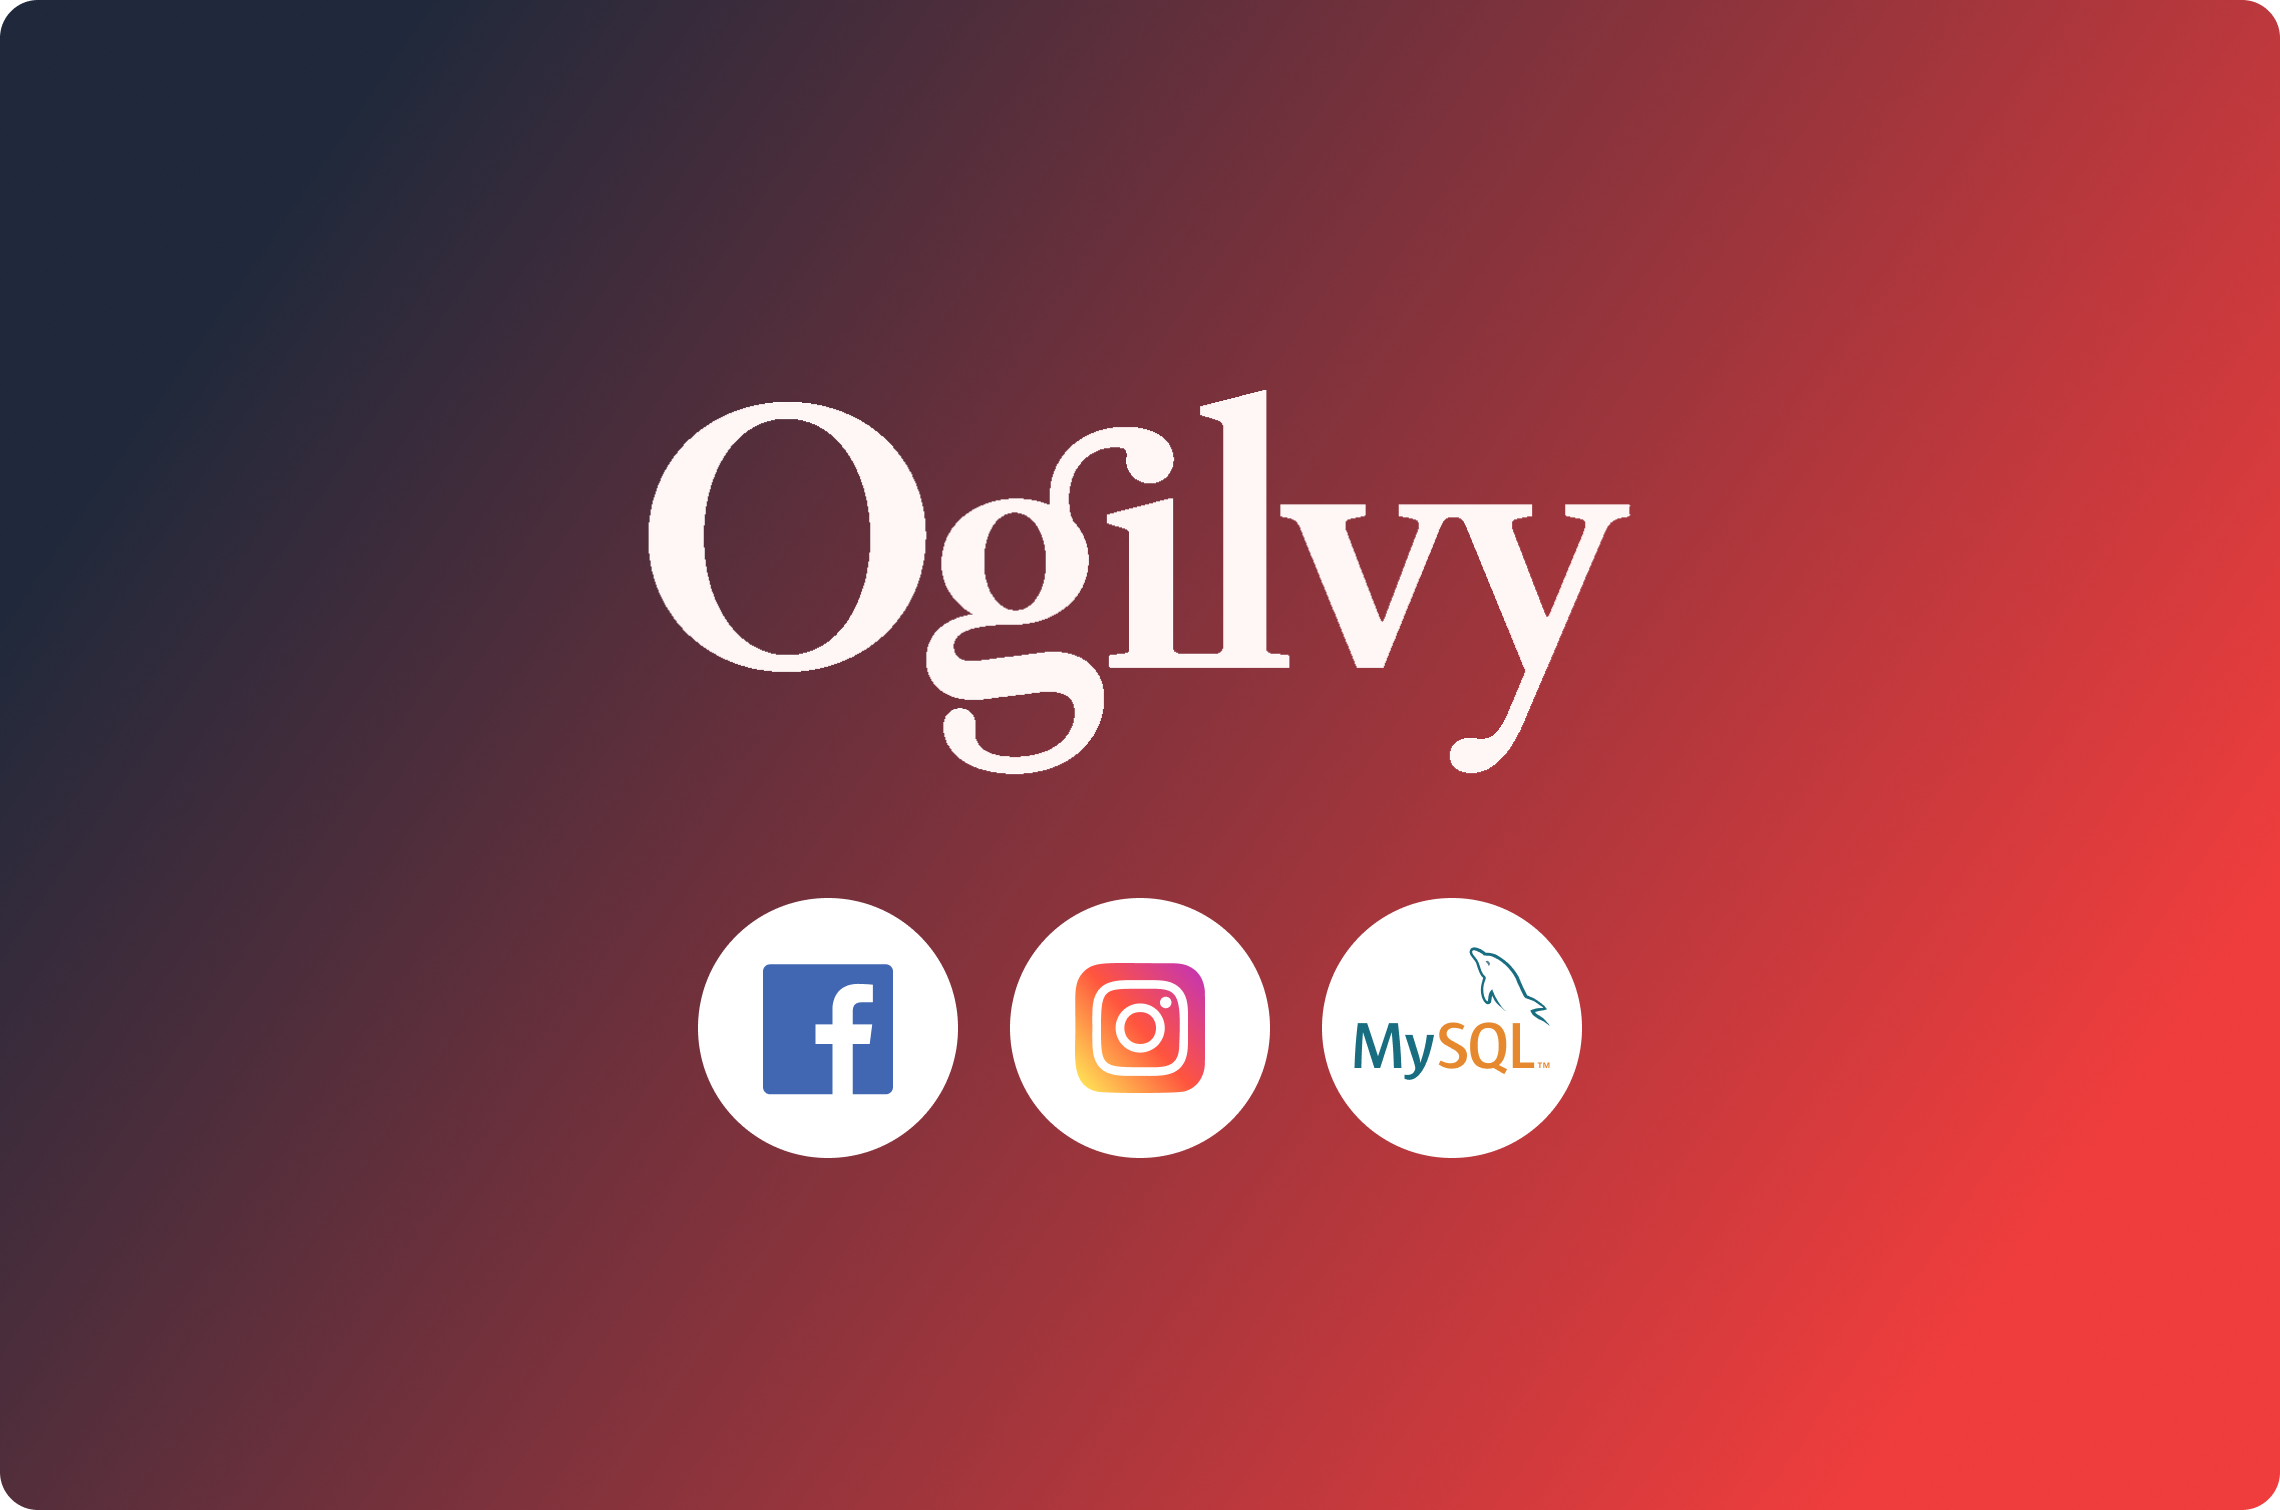 Como a Ogilvy Spain simplifica os dados de mídia social com o Dataddo